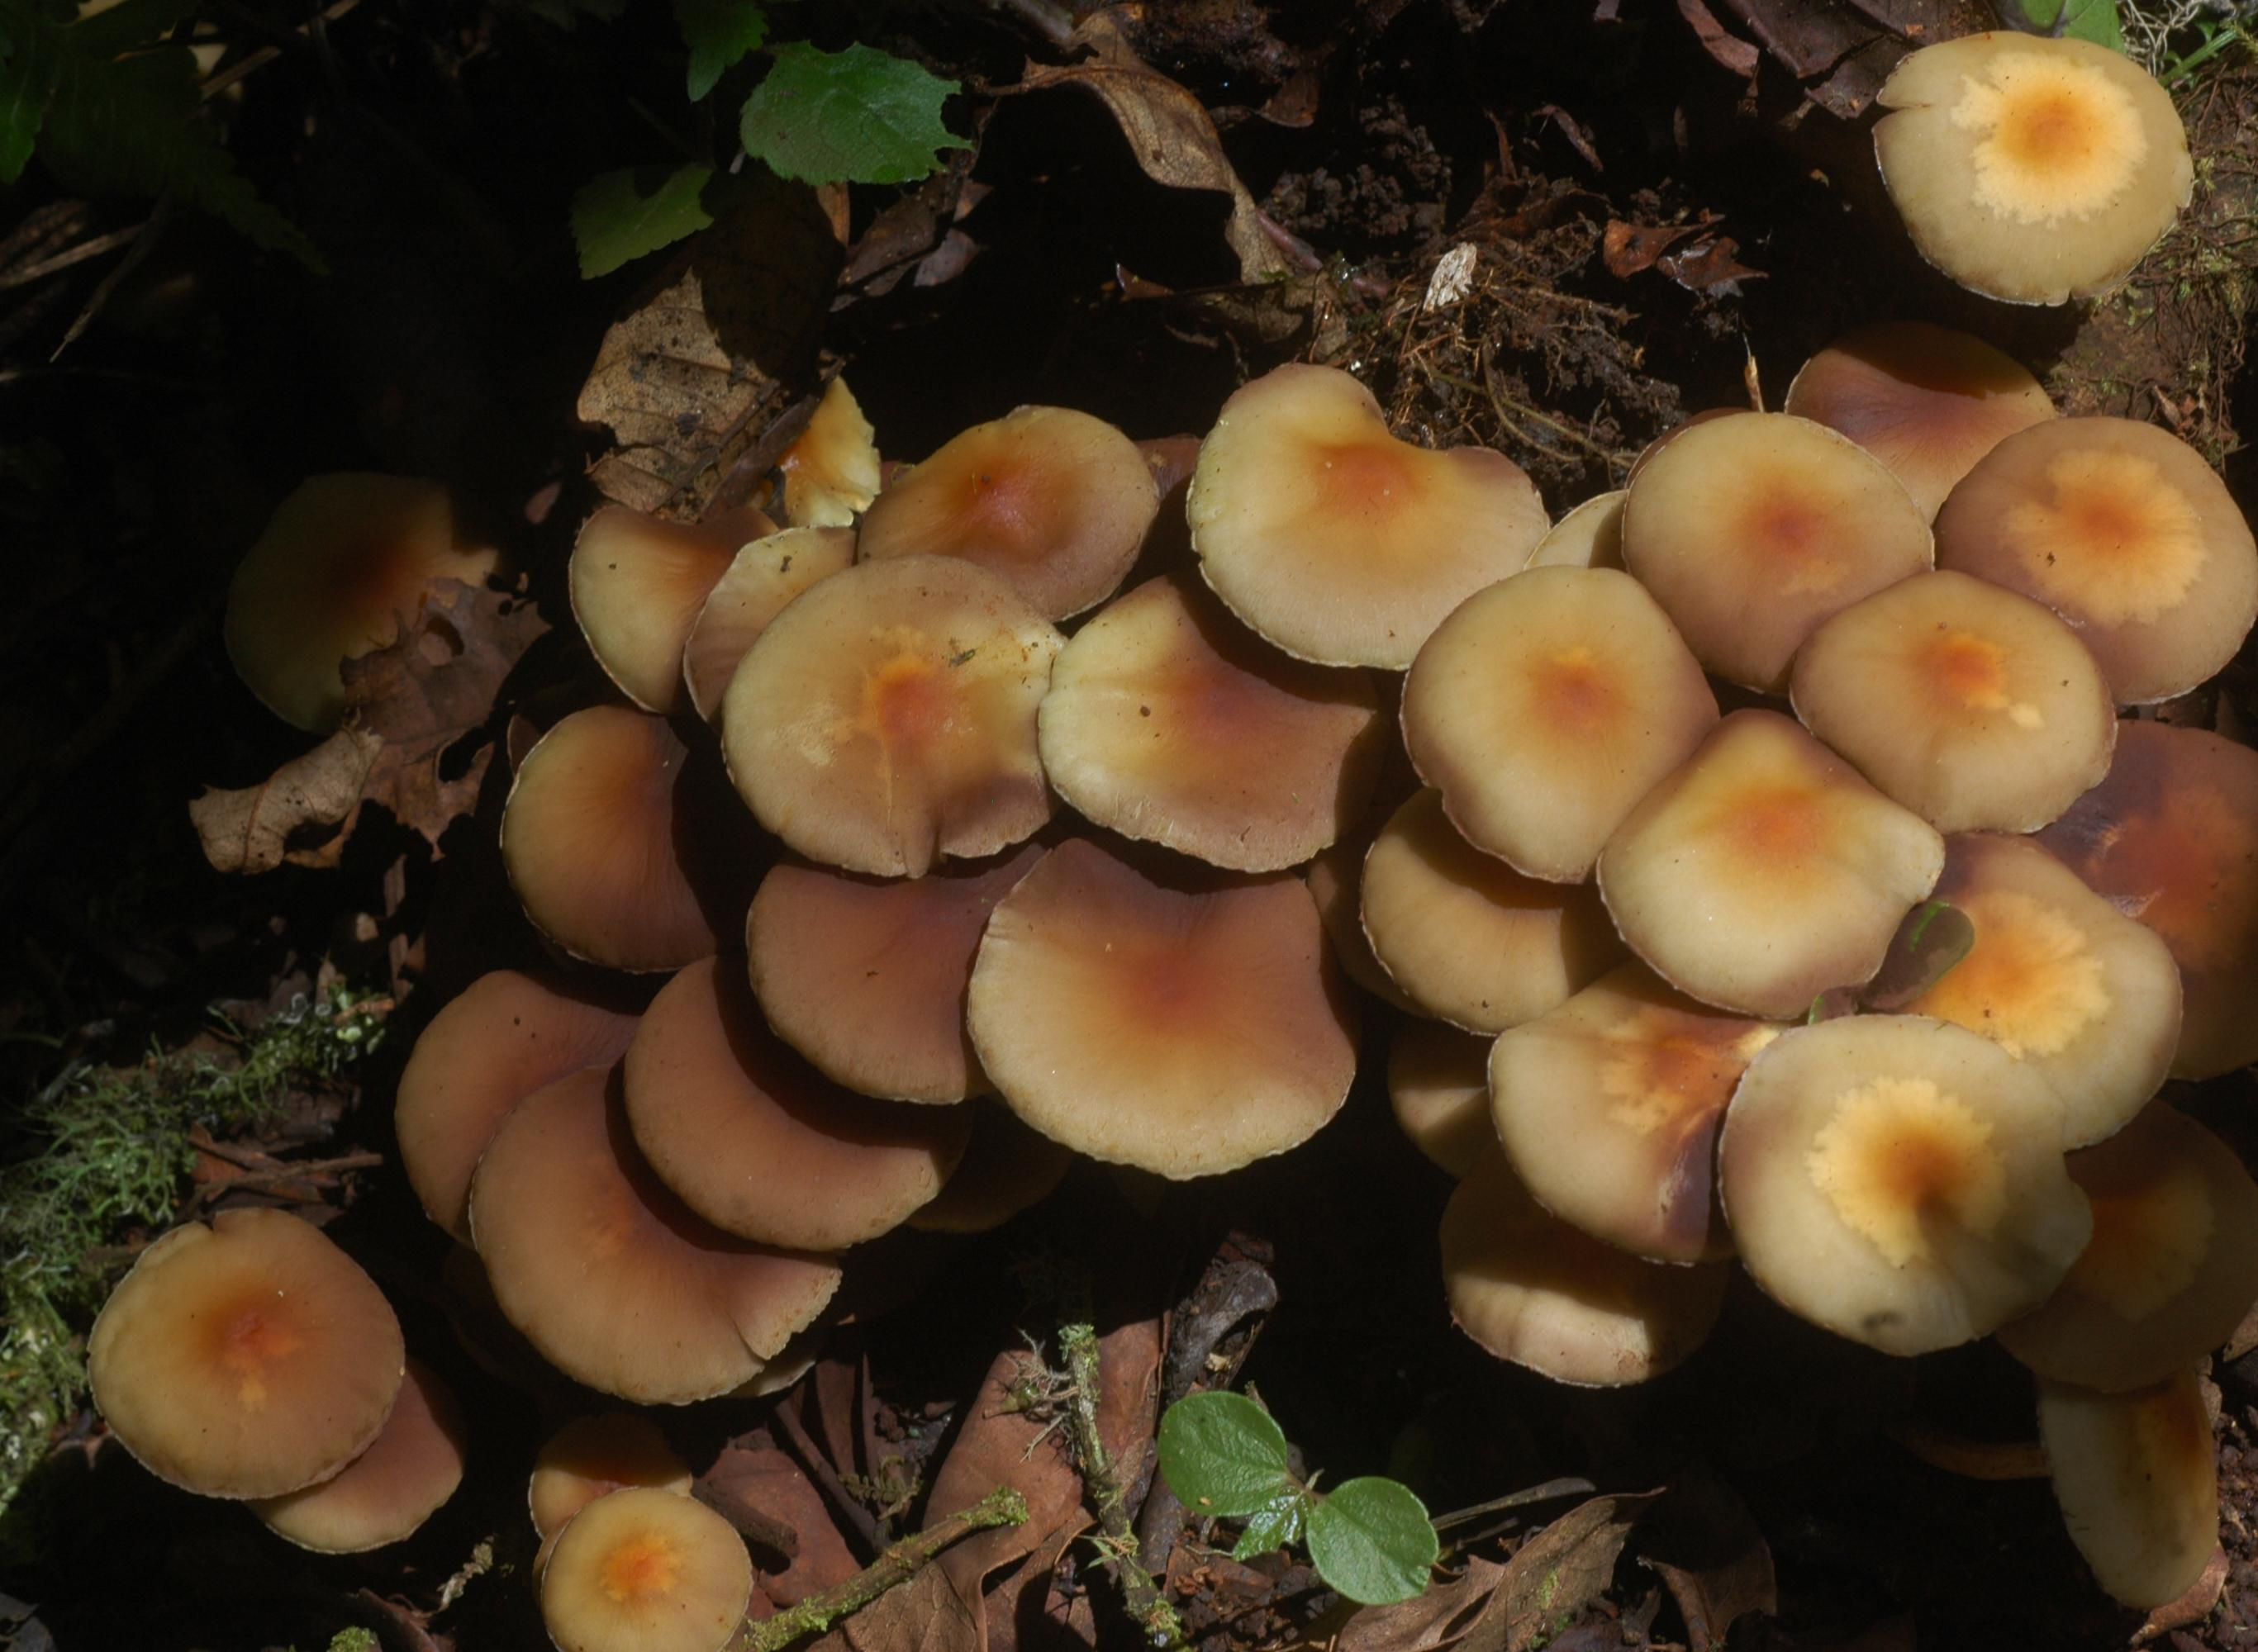 Les champignons font la richesse de la biodiversité congolaise (Photo: S. Declerck)